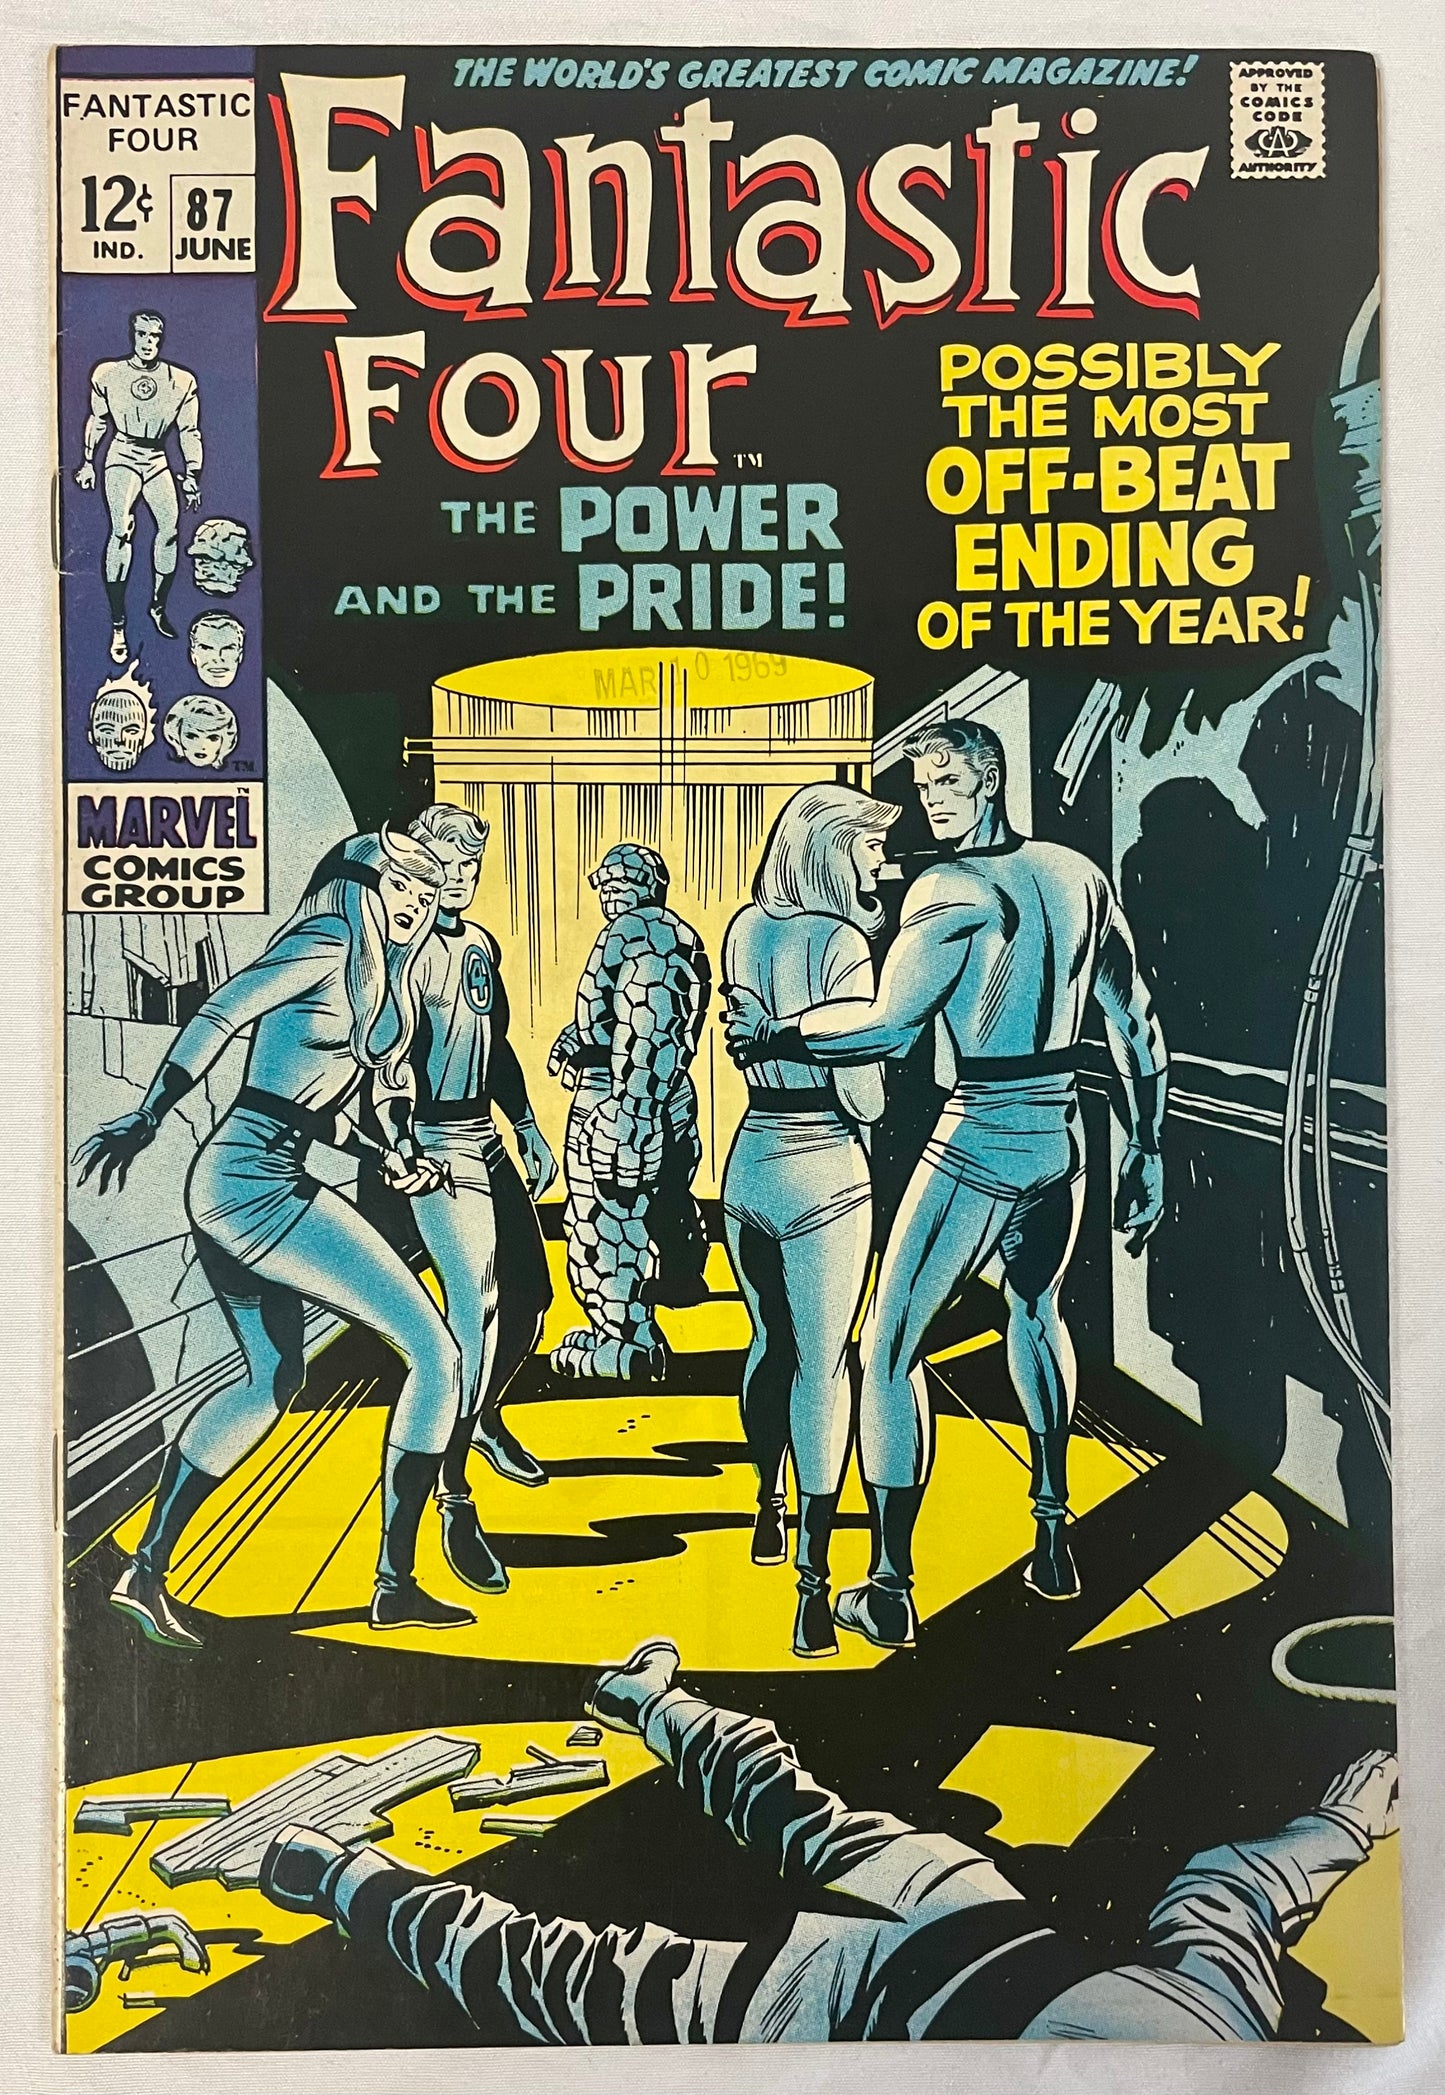 Marvel Comics Fantastic Four #87